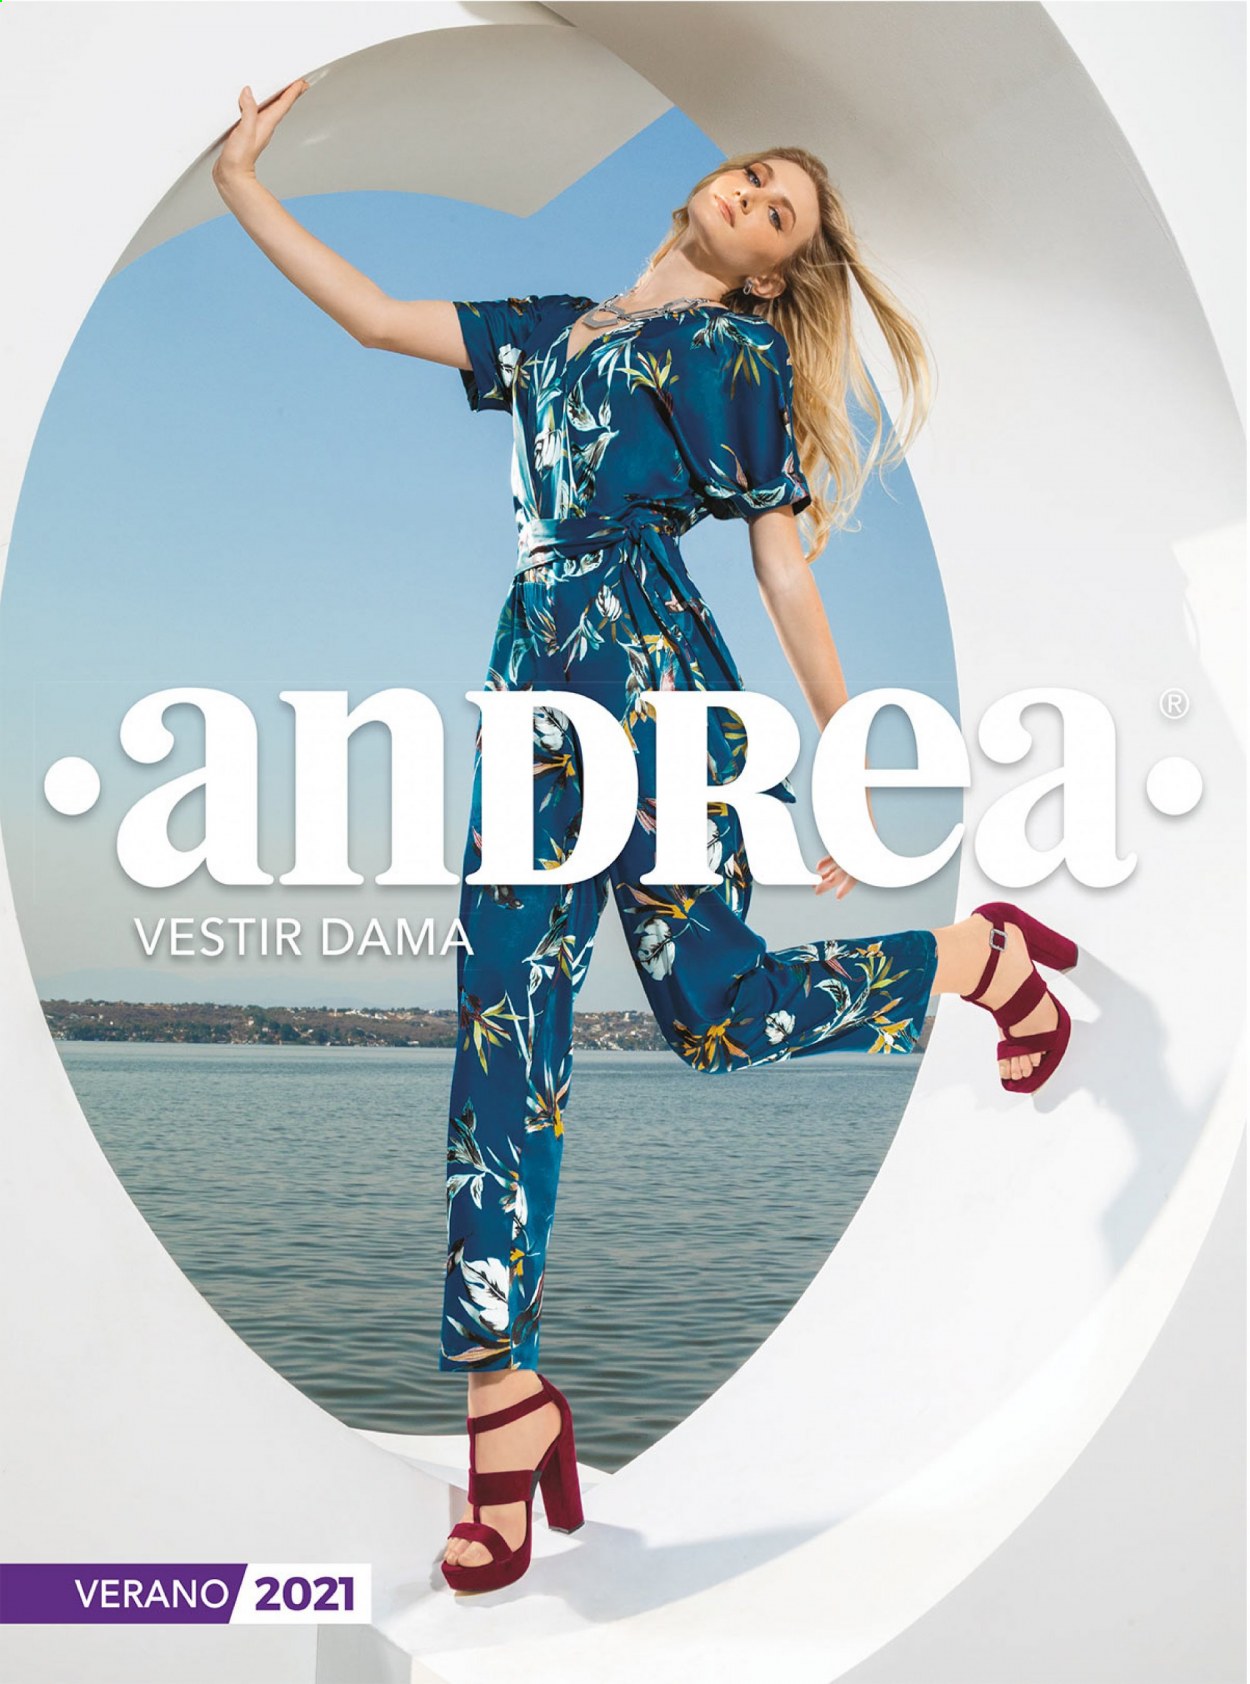 Catálogo Andrea.